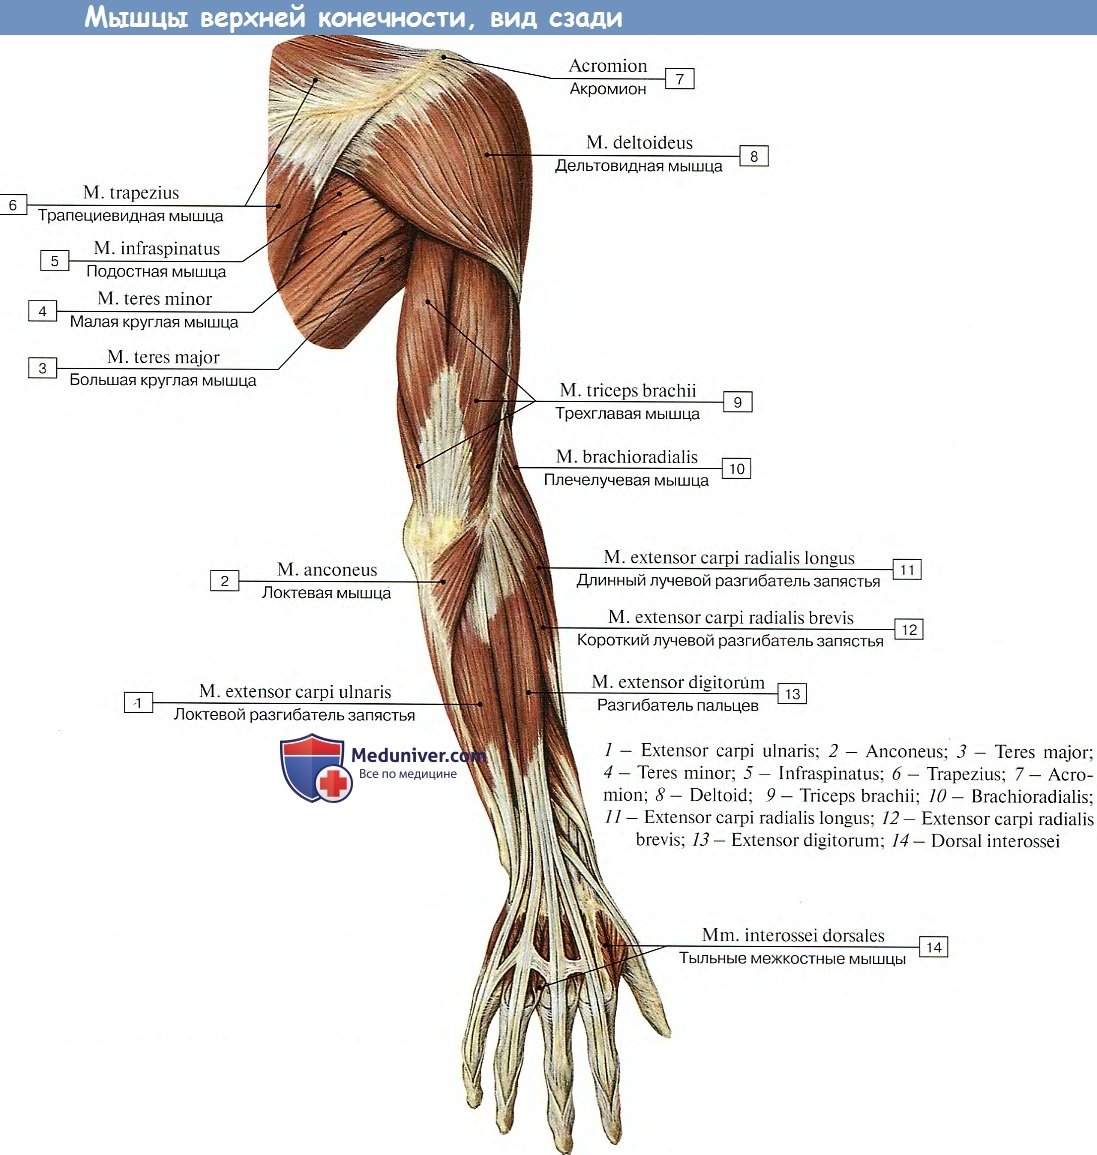 Мышцы плечевого пояса и верхней конечности